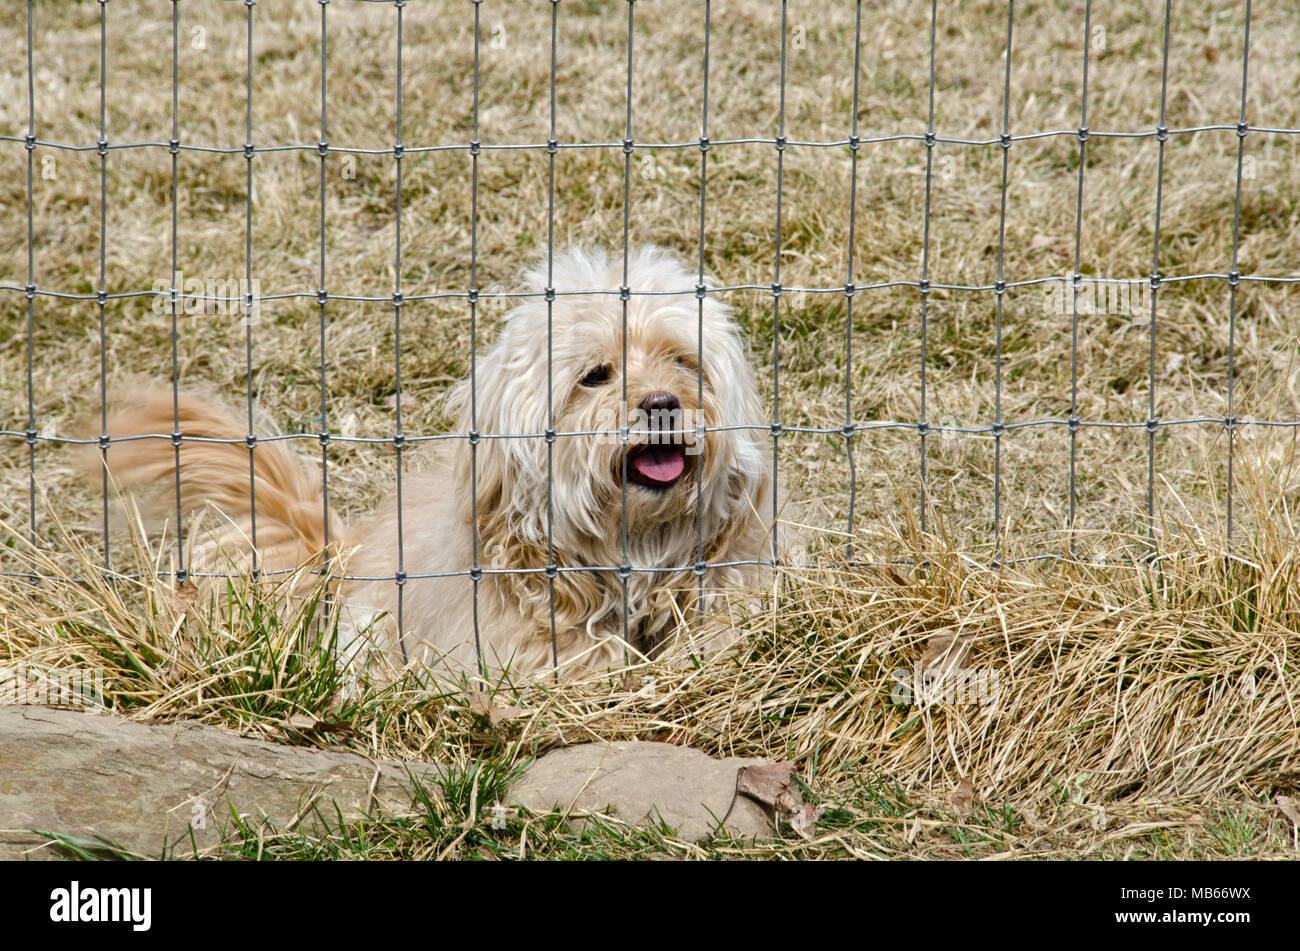 Un mignon chiot de race mixte se trouve derrière une clôture, attendant juste pour jouer ! Banque D'Images